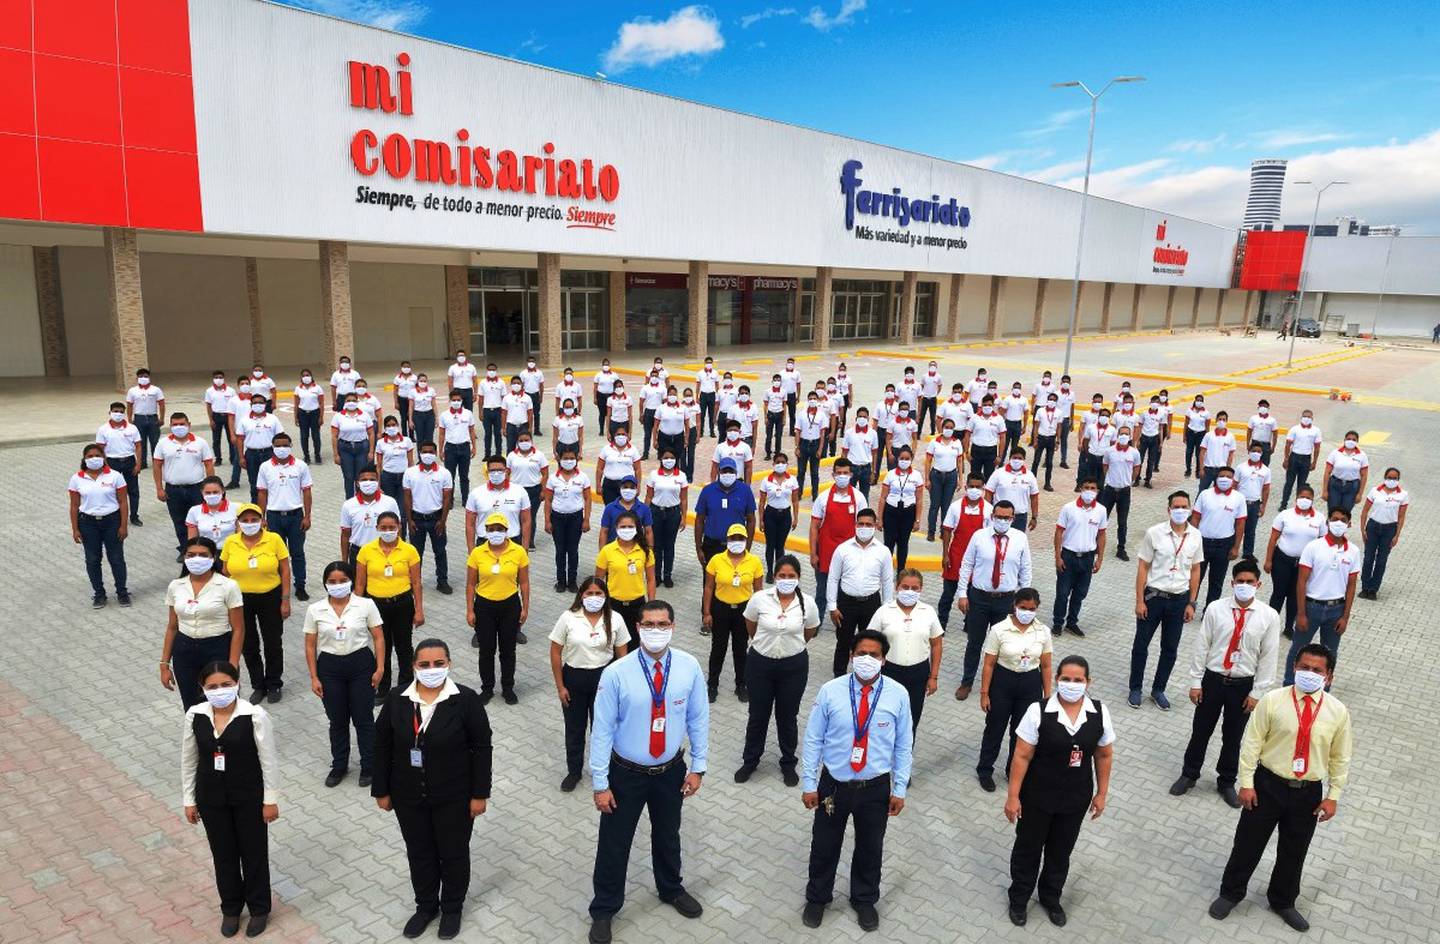 Mi Comisariato, de corporación El Rosado, es la segunda cadena de supermercados más grande del Ecuador.